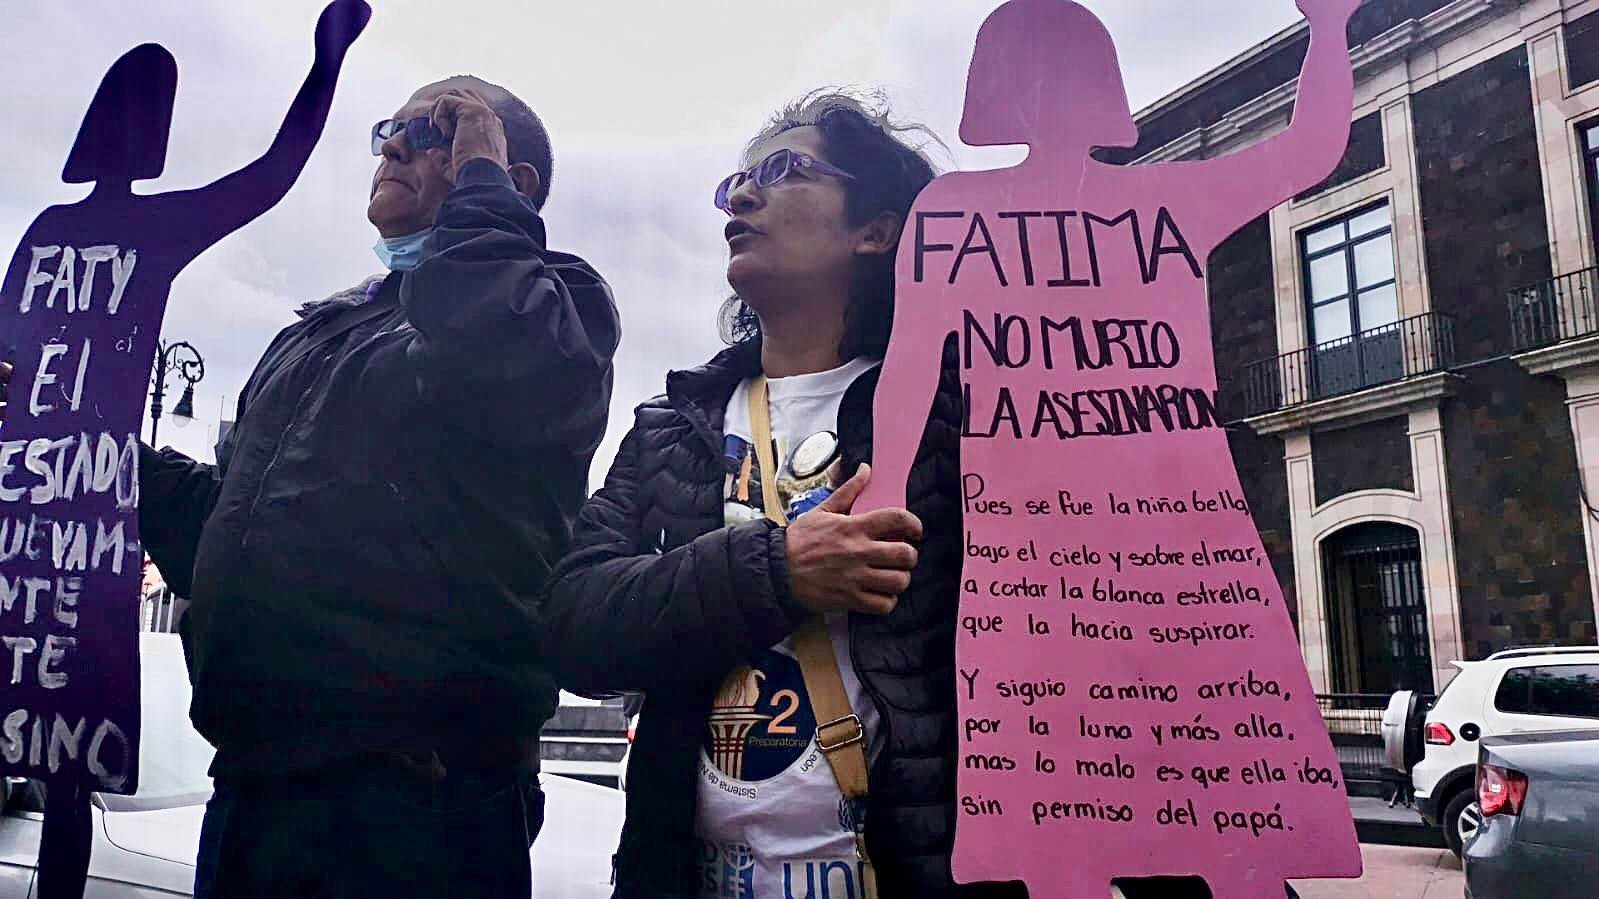 Continúa la exigencia de justicia por el feminicidio de Fátima